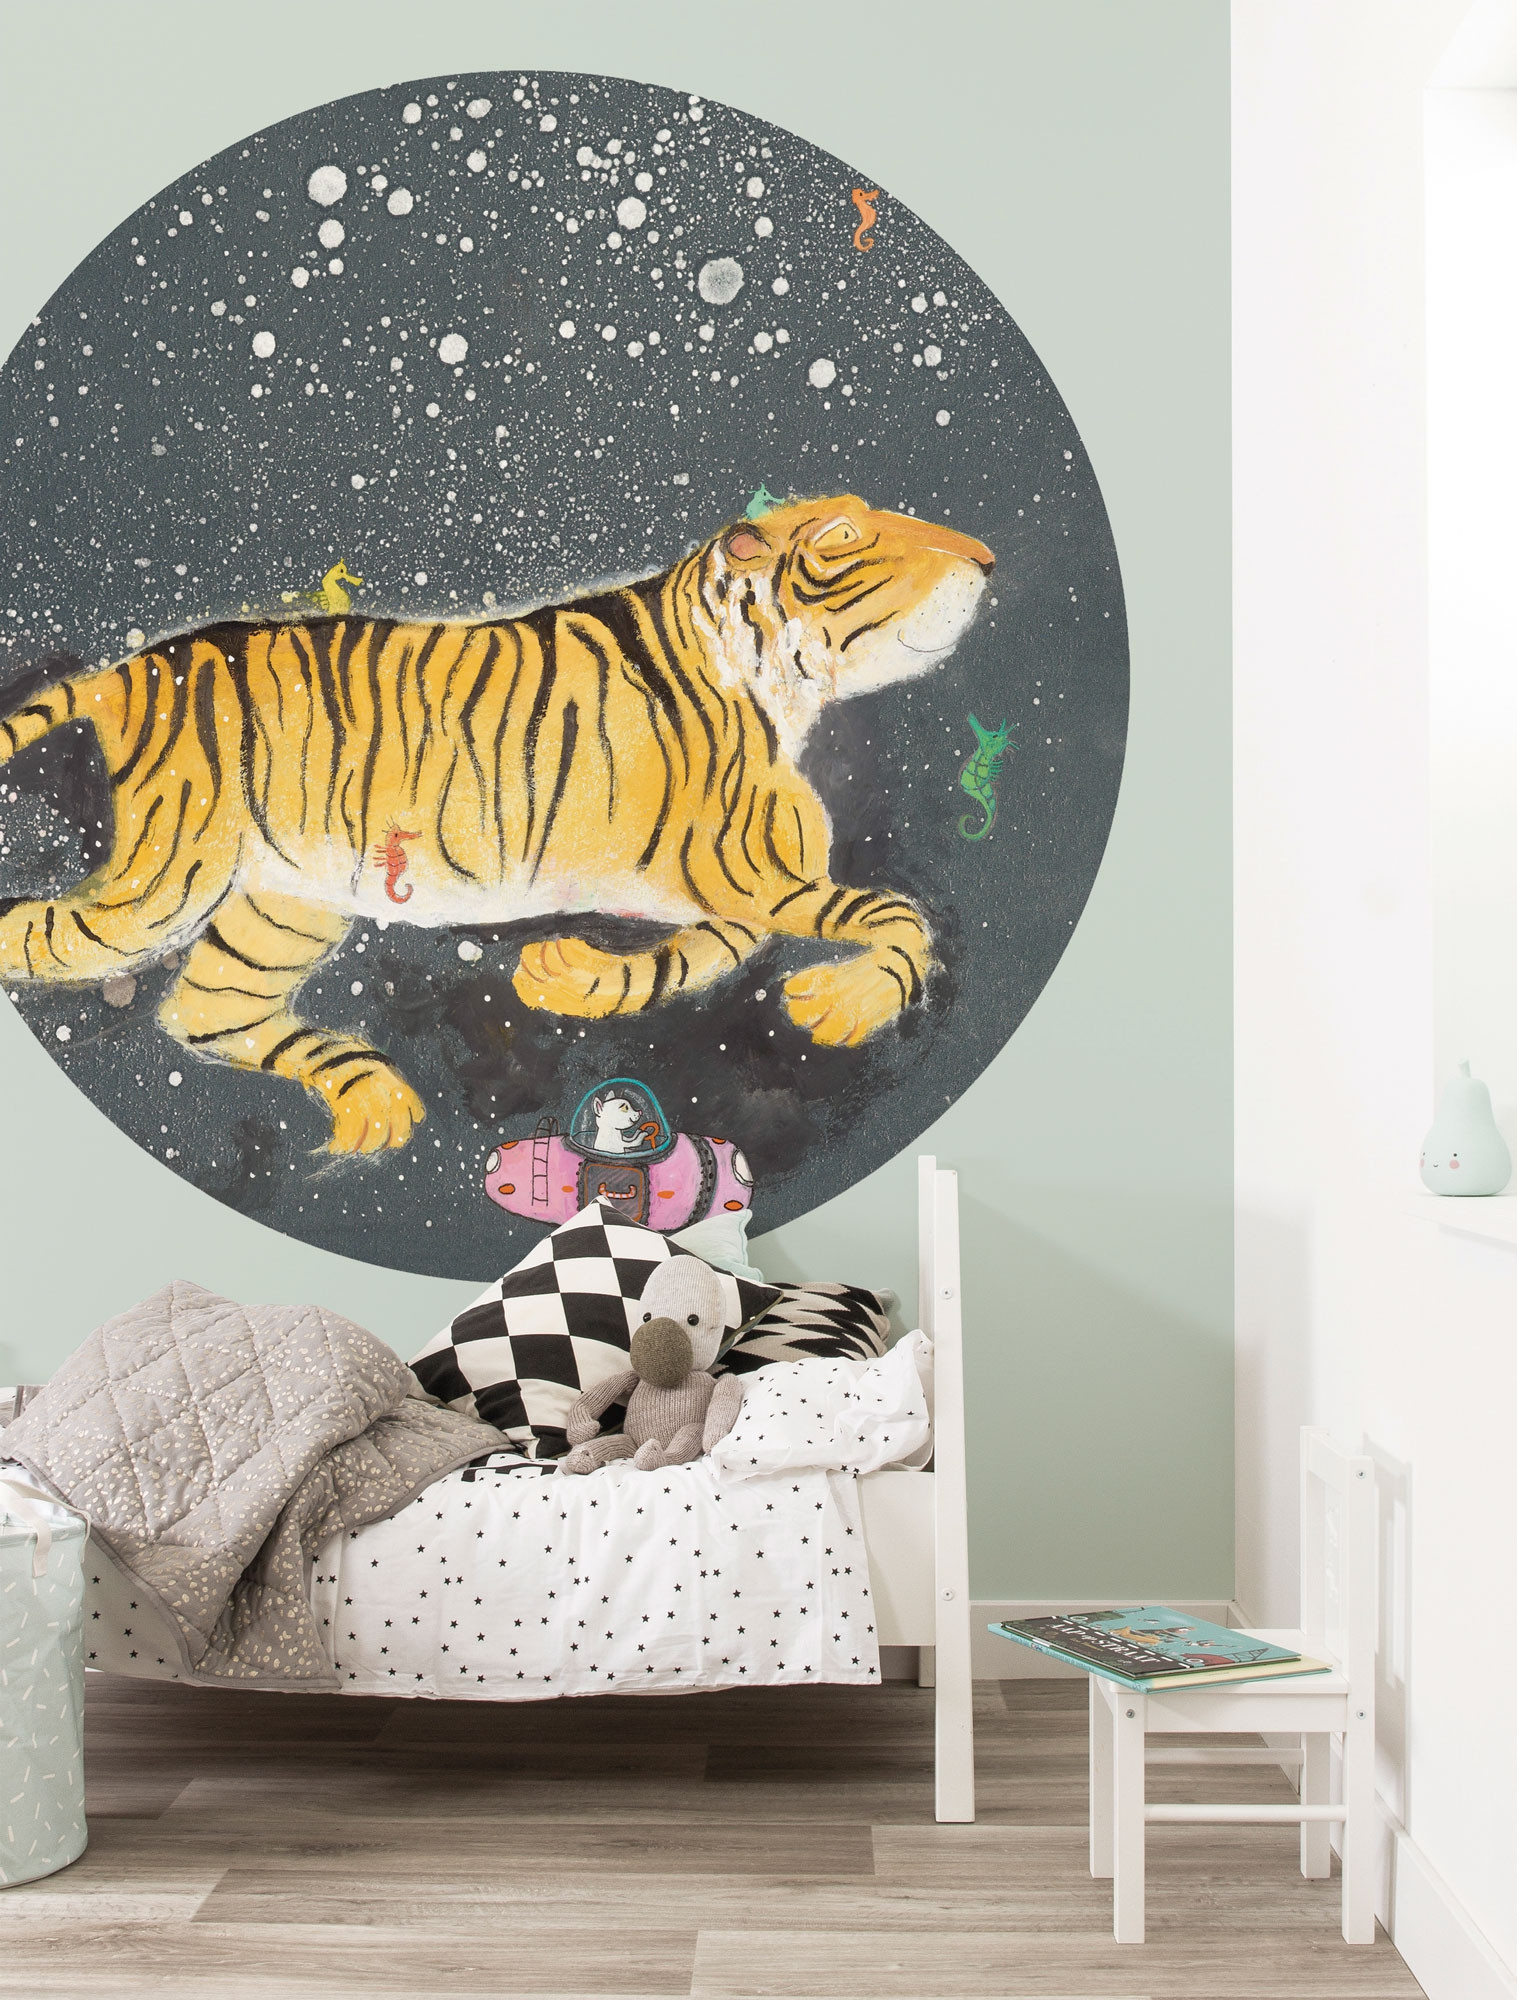 KEK Wallpaper Circle, Behangcirkel Smiling Tiger, ø 190 cm-8719743885974-310